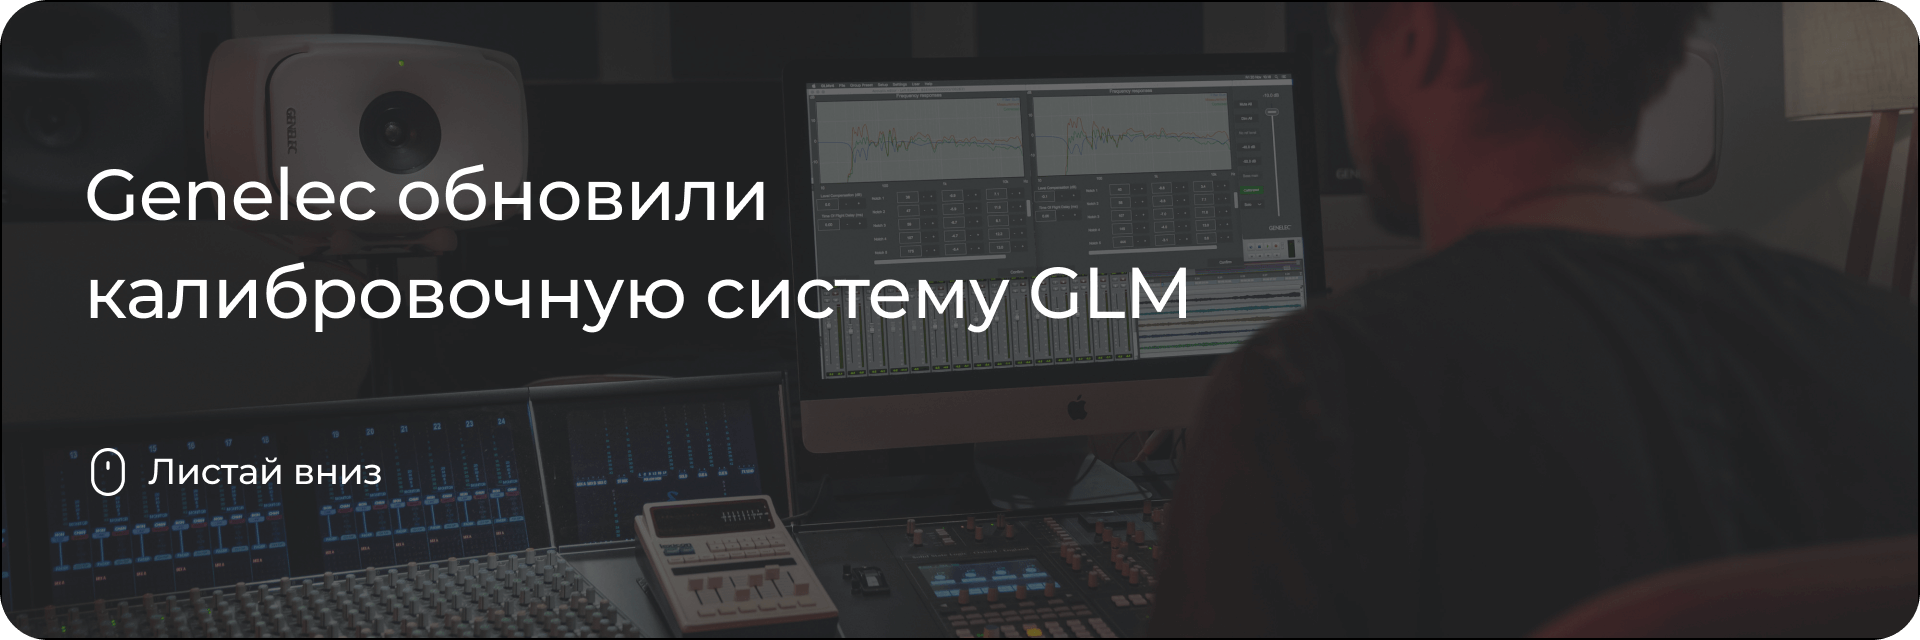 Обновление Genelec GLM